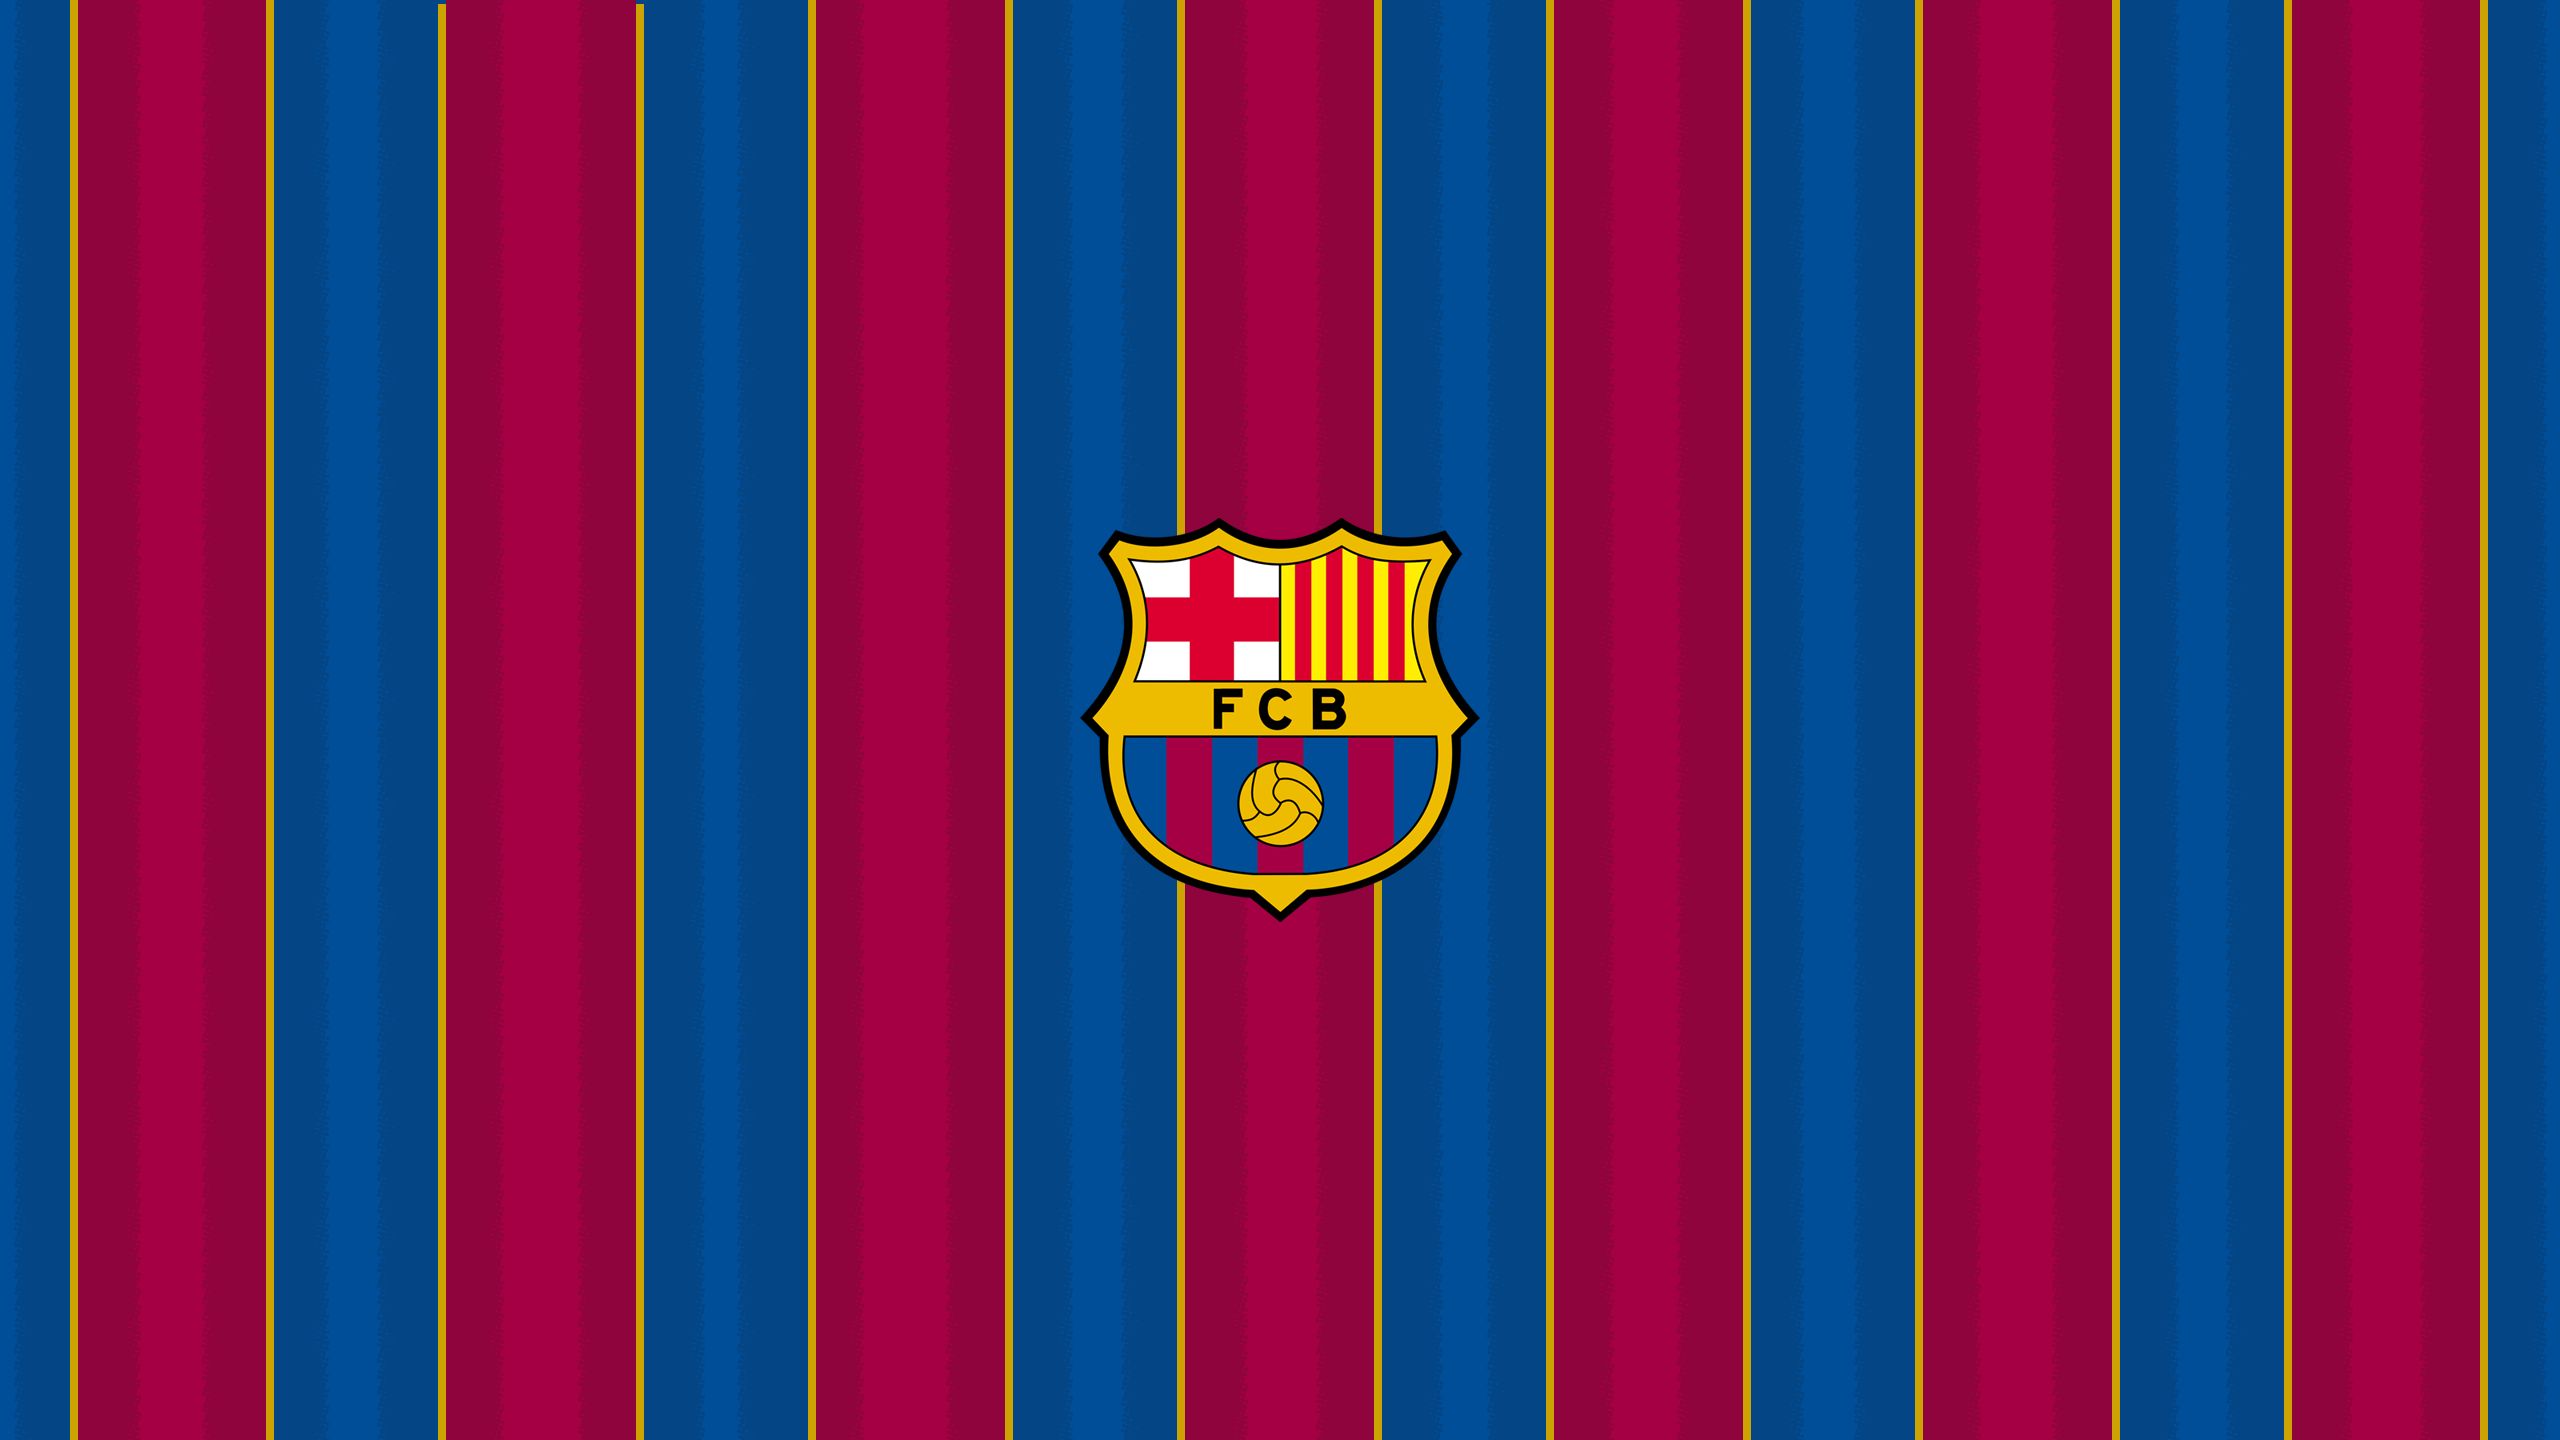 502769 descargar imagen fc barcelona, deporte, cresta, emblema, logo, fútbol, símbolo: fondos de pantalla y protectores de pantalla gratis